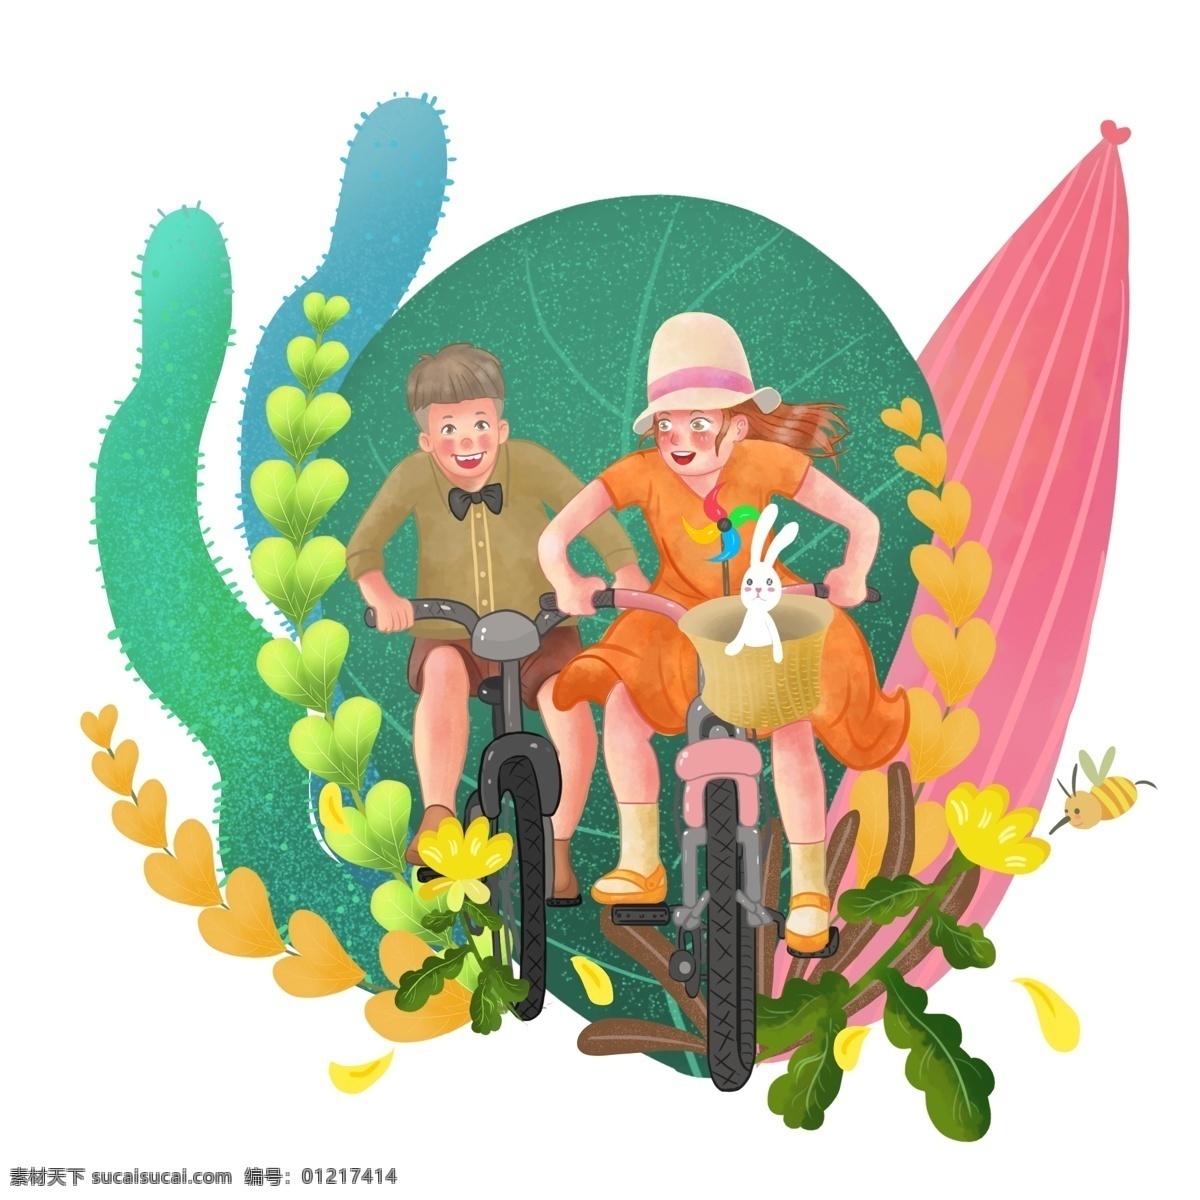 商用 高清 手绘 两个 童儿 骑 自行车 儿童形象 玩耍 植物 卡通 可商用 小清新